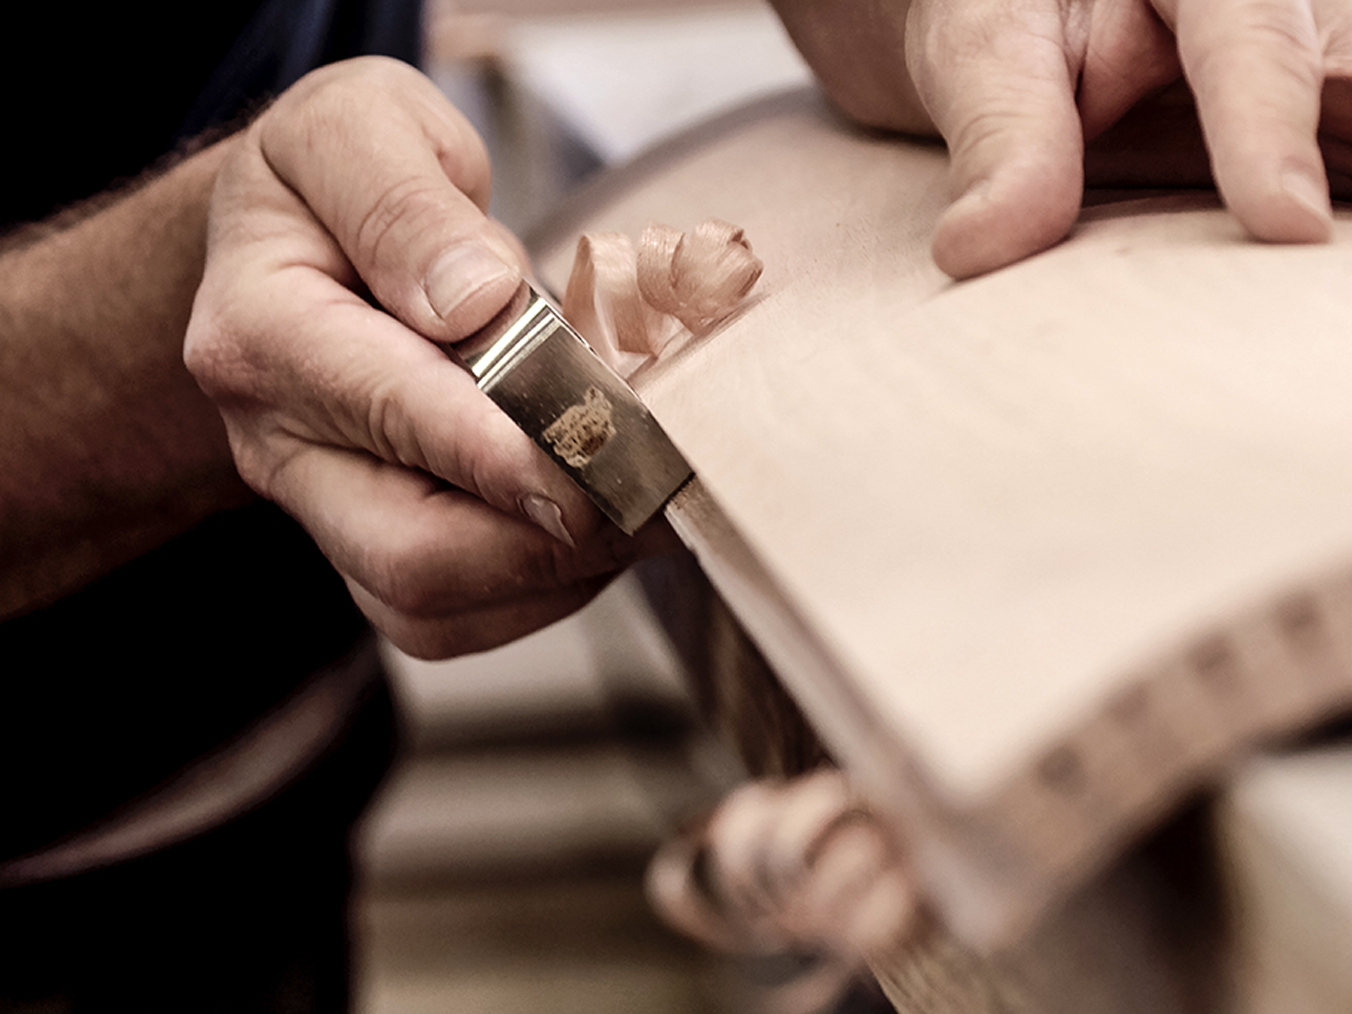 La précision de l'artisanat : des mains ciselant soigneusement le bois dans un atelier, mettant en valeur l'art du travail du bois.